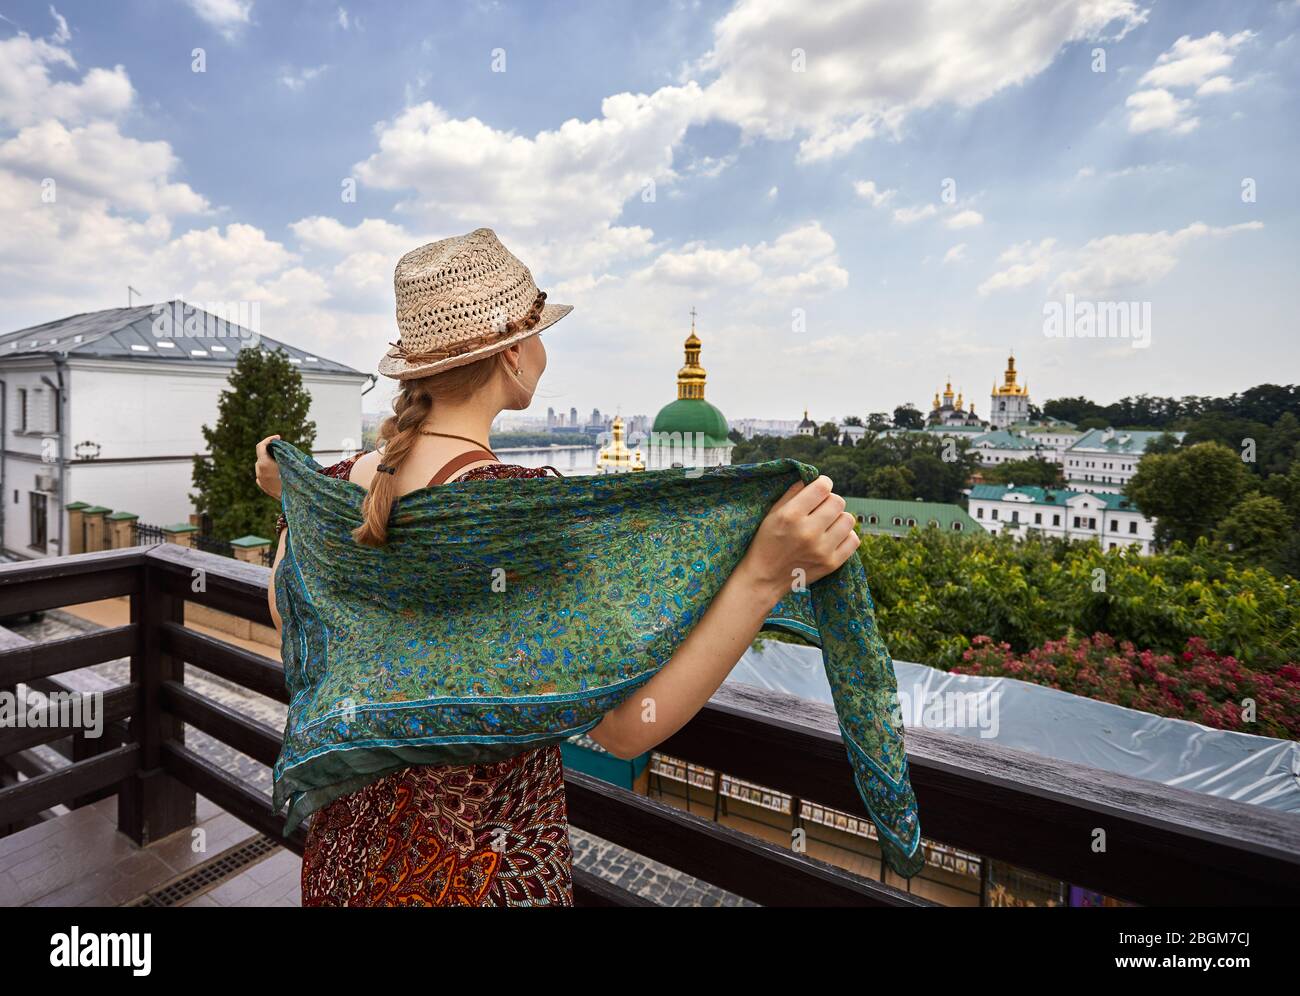 Frau mit Hut mit Schal mit Blick auf die Kirche mit goldenen Kuppeln in Kiew Pechersk Lavra Christian komplex. Alte historische Architektur in Kiew, Ukraine Stockfoto